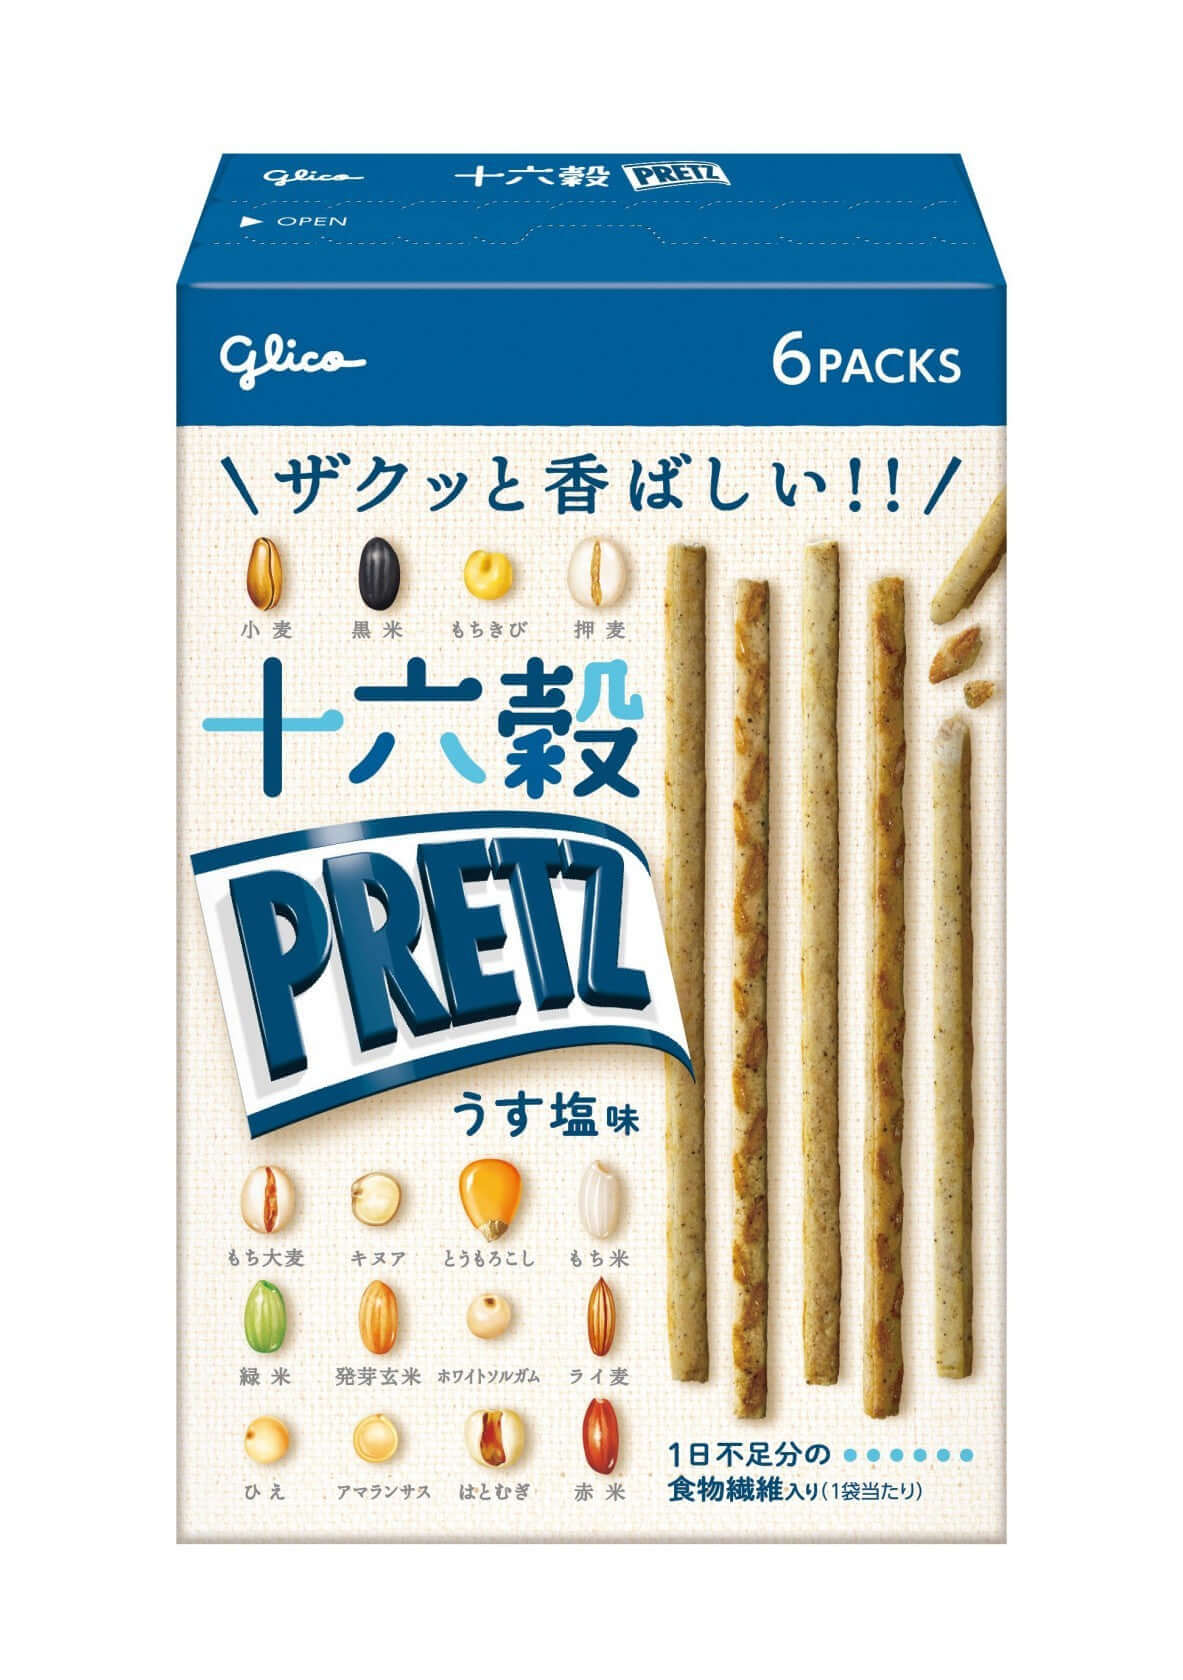 Pretz Biscuit Sticks 16 Grain - Light Salt